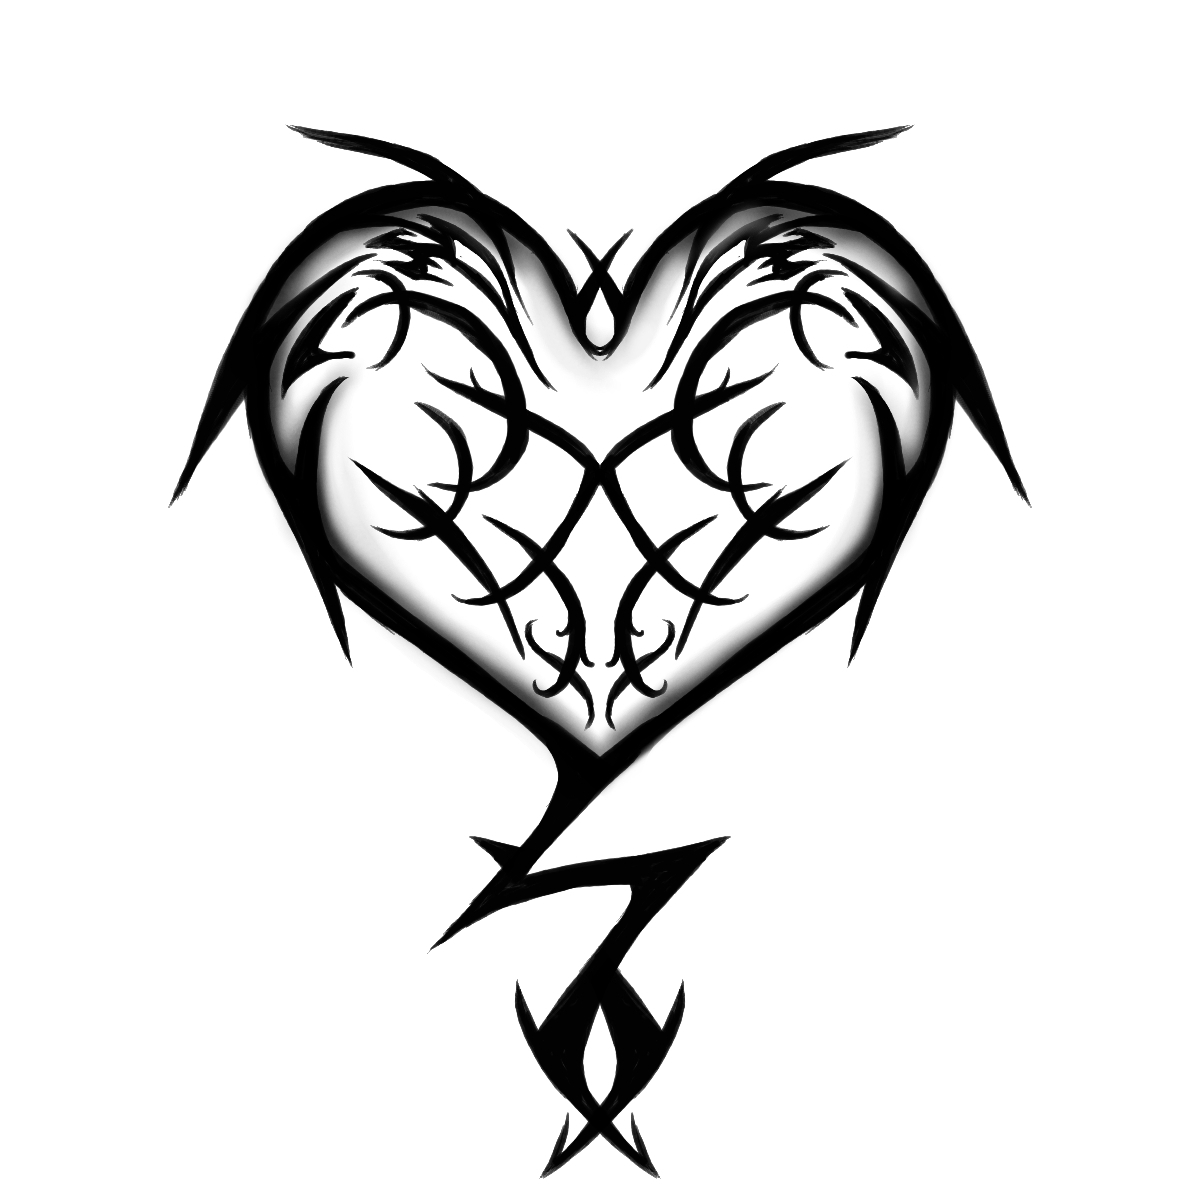 Owl Tribal Henna Tattoo Design | Tattoomagz.com › Tattoo Designs ...